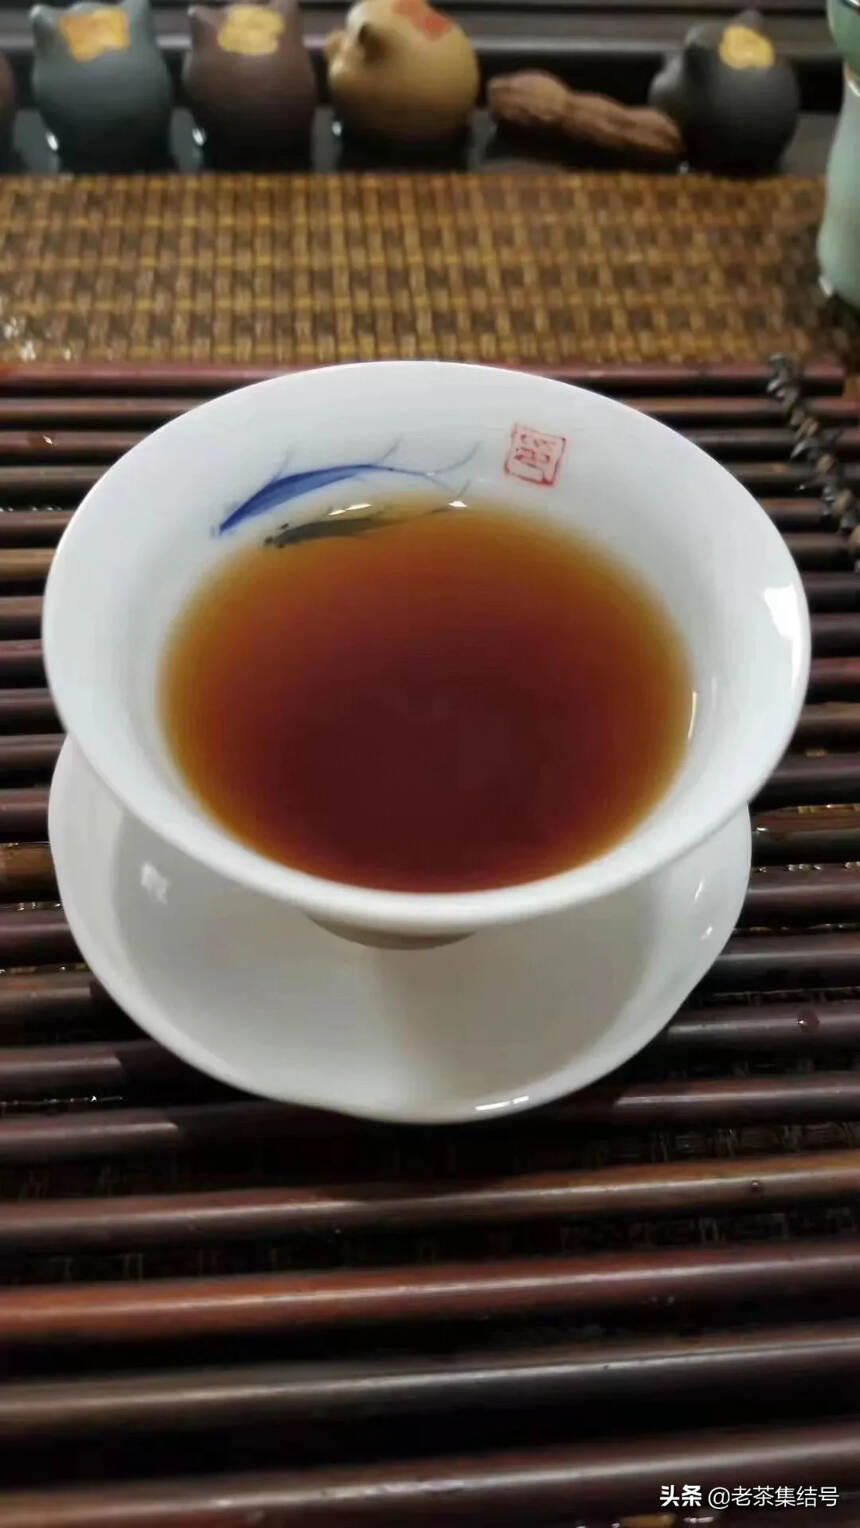 茶，世间的沧海桑田、斗转星移的变数尽收纳于它的浮浮沉